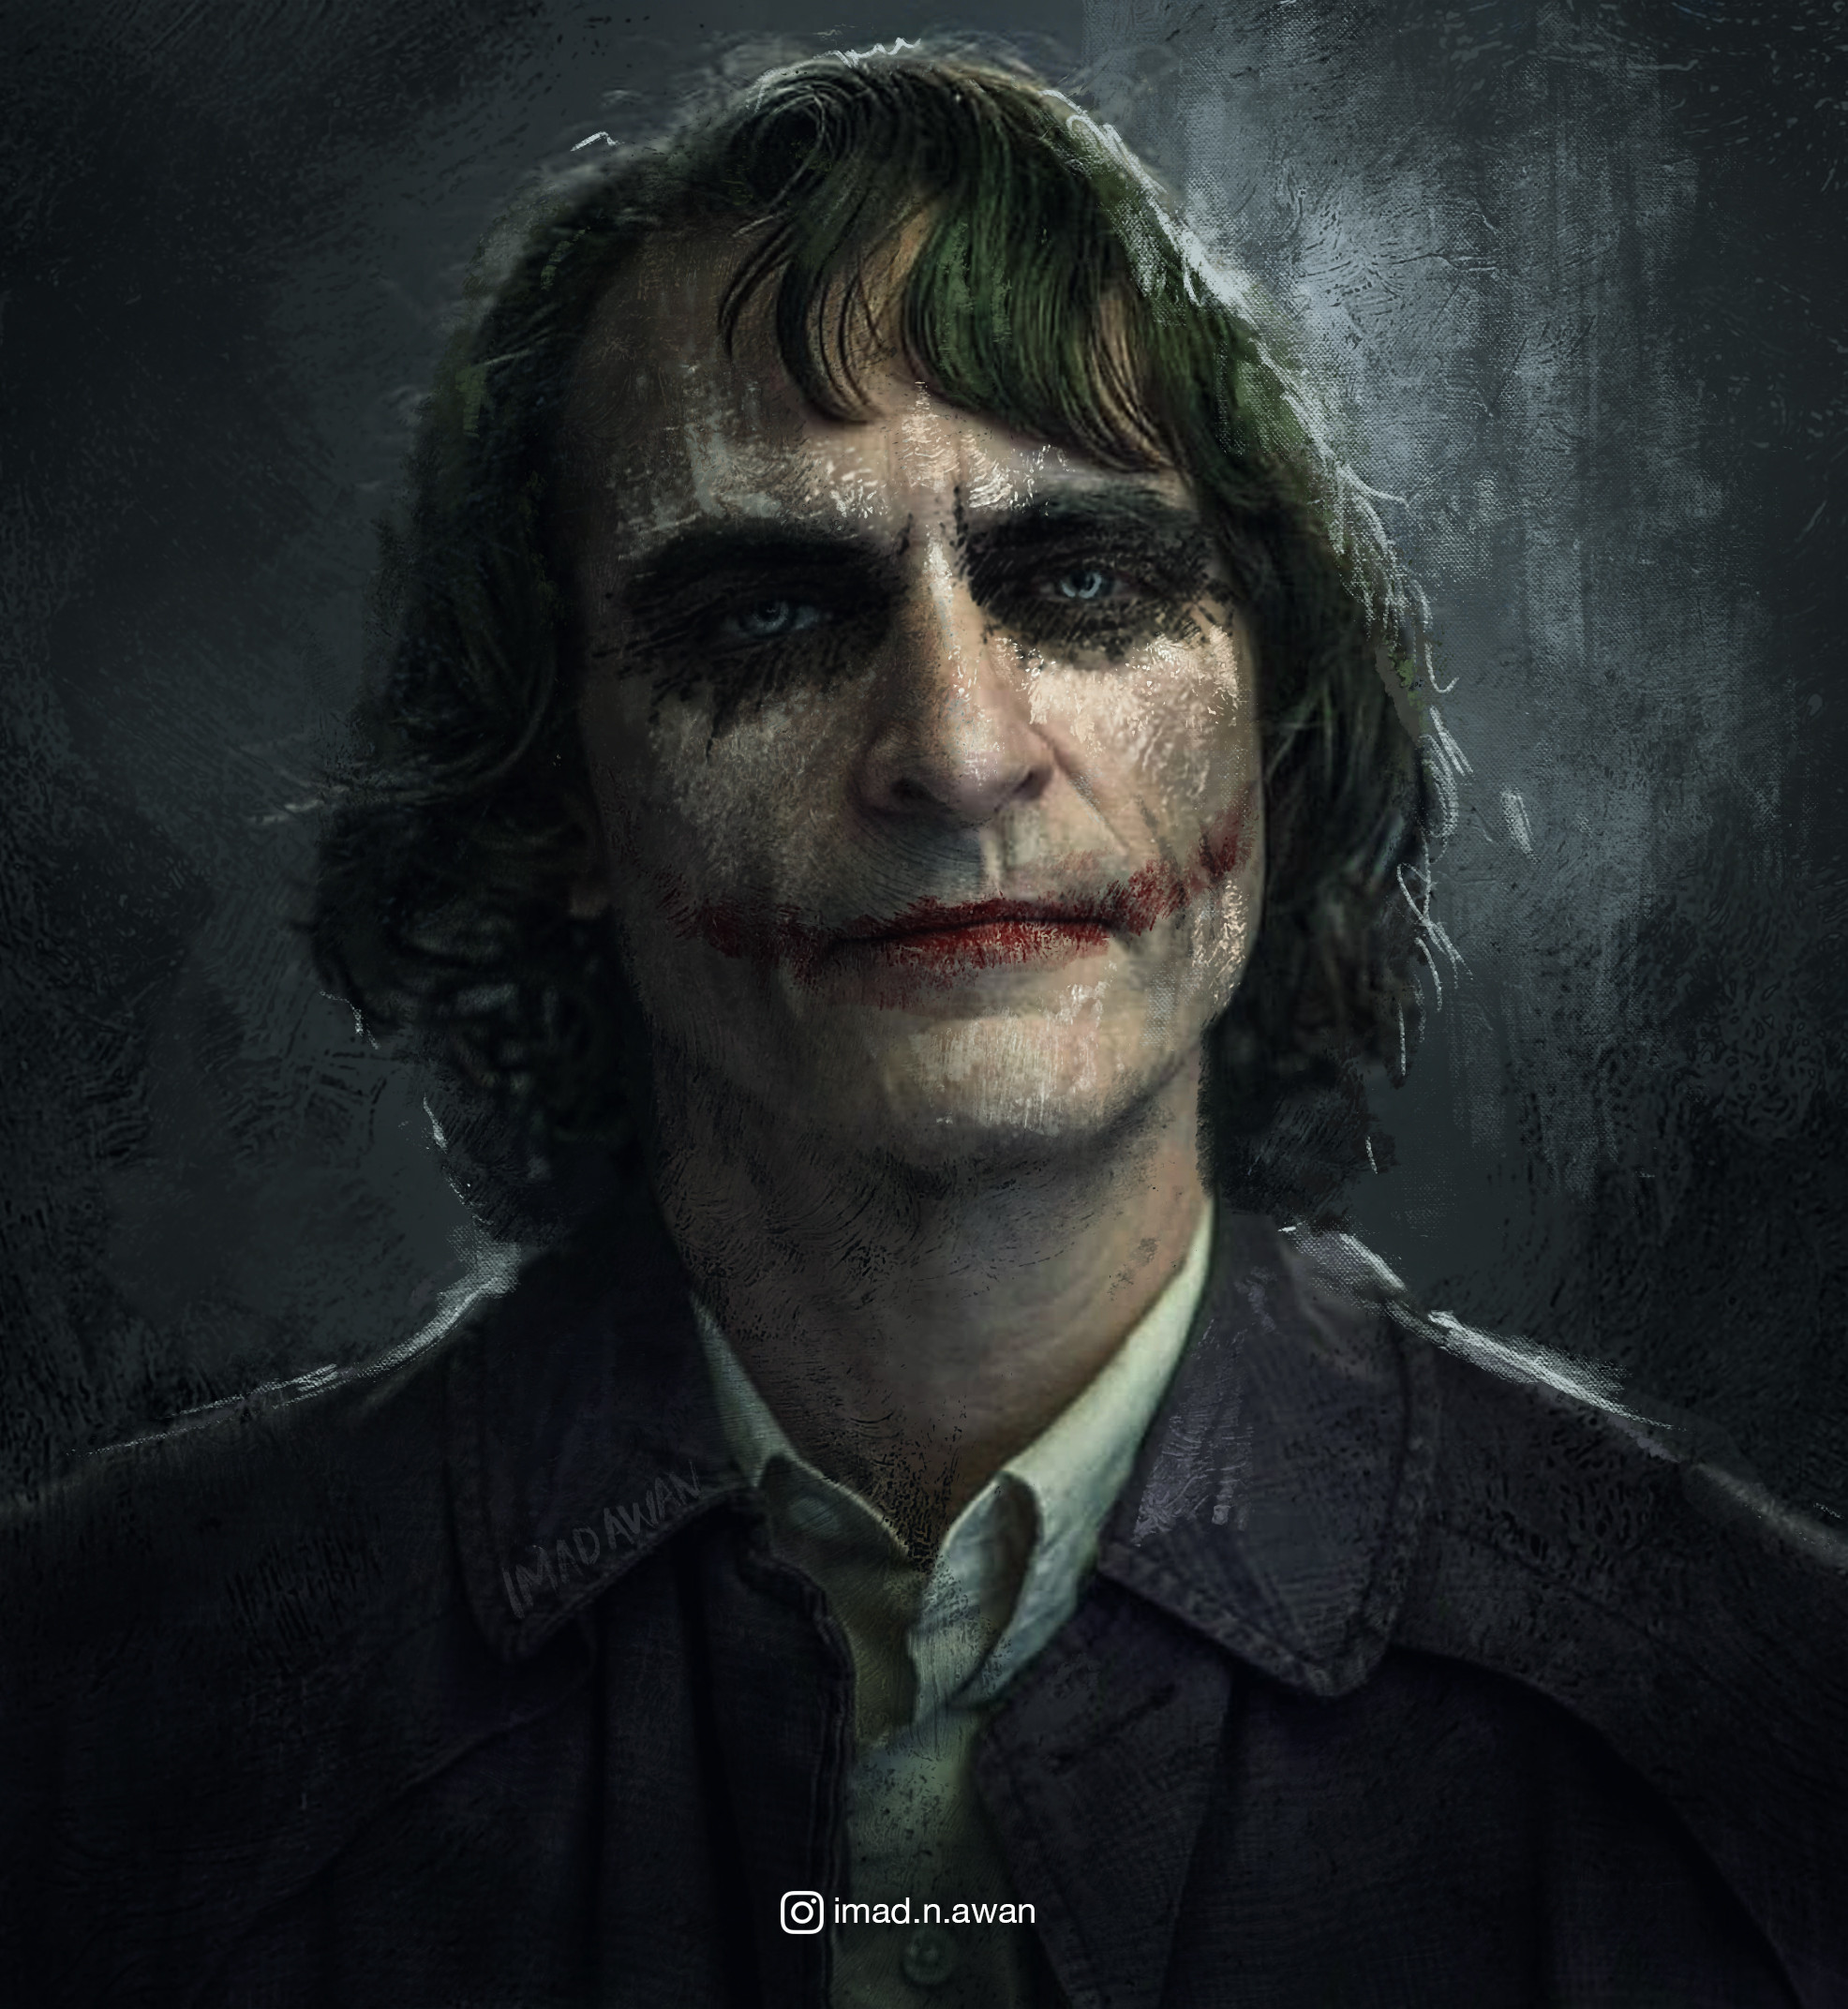 Imad Awan - Concept Artist and Illustrator - The Joker